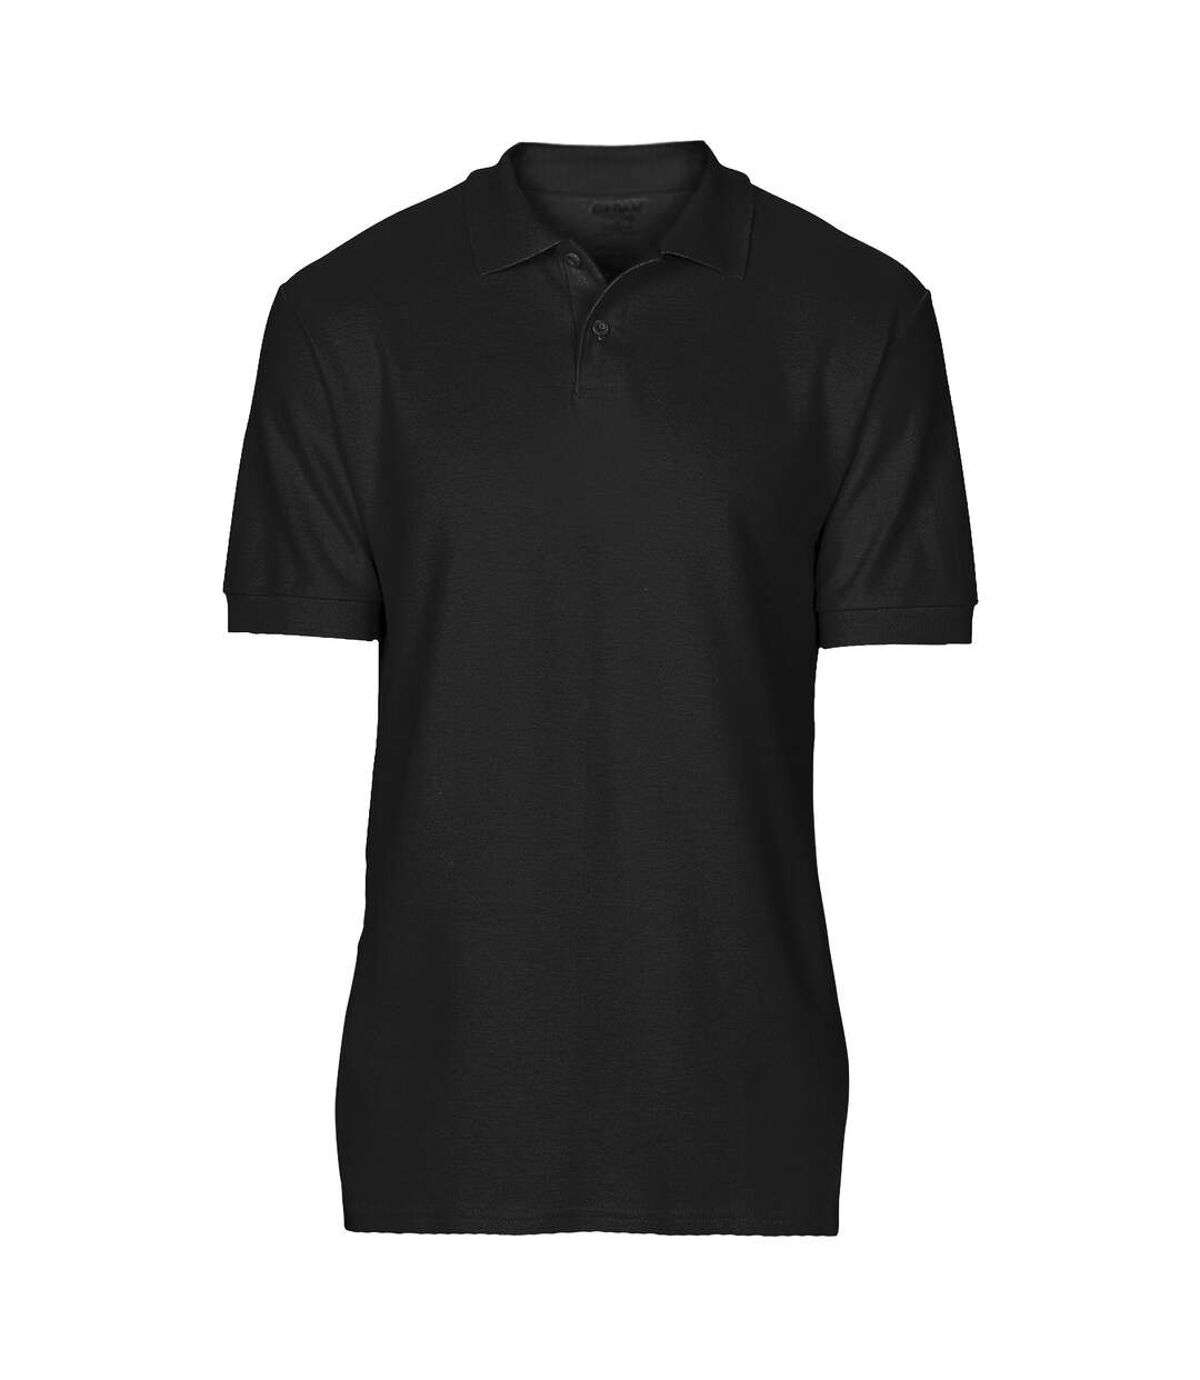 Gildan Softstyle Mens Short Sleeve Double Pique Polo Shirt (Black)